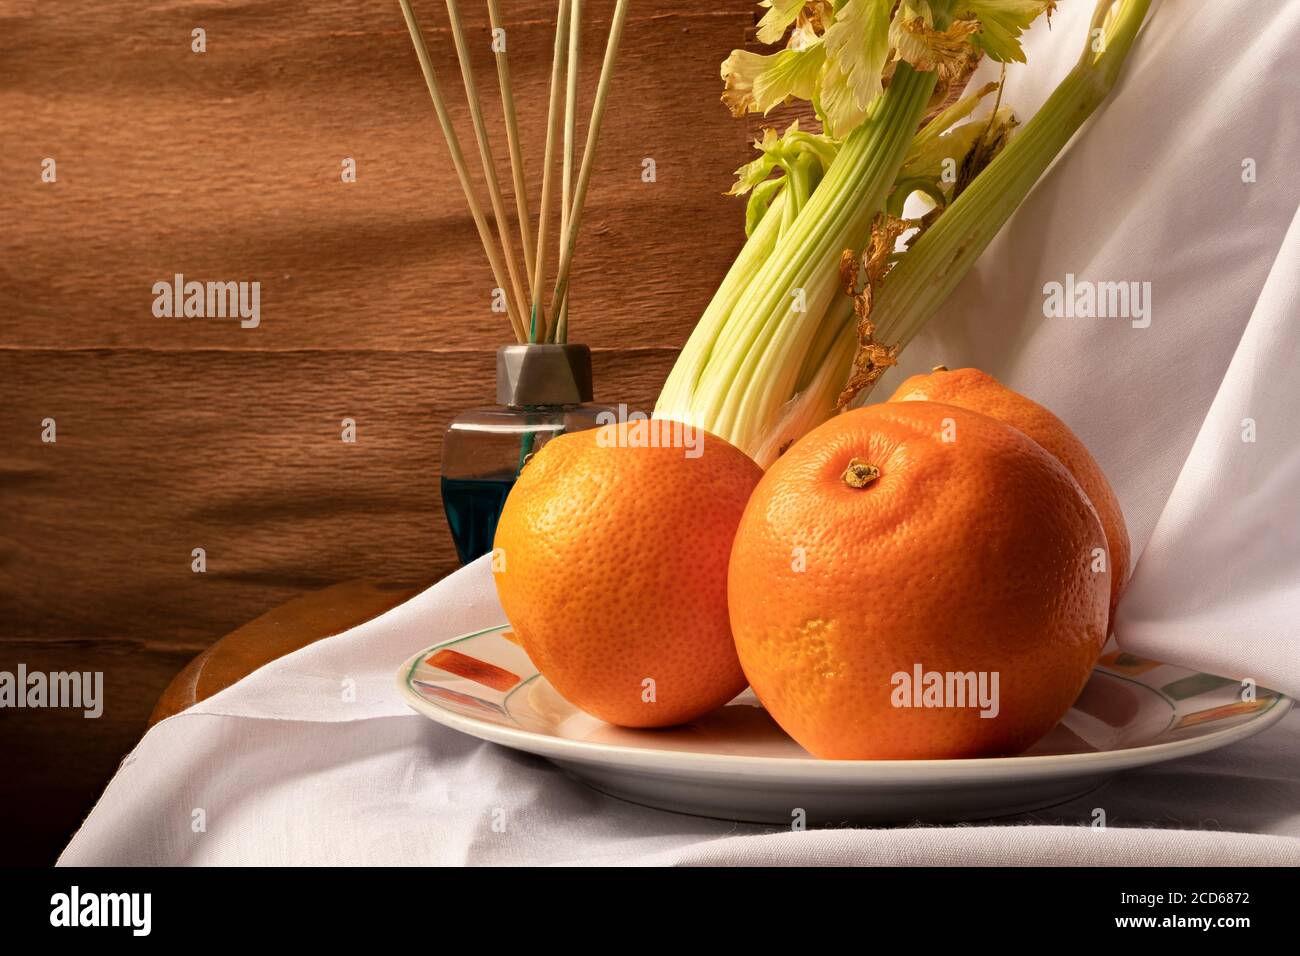 Stillleben von Orangen, Sellerie und blauen Lufterfrischer. Die Nahaufnahme der Orangen sorgt für eine ruhige und kühle Atmosphäre in einem rustikalen Holzambiente. Stockfoto